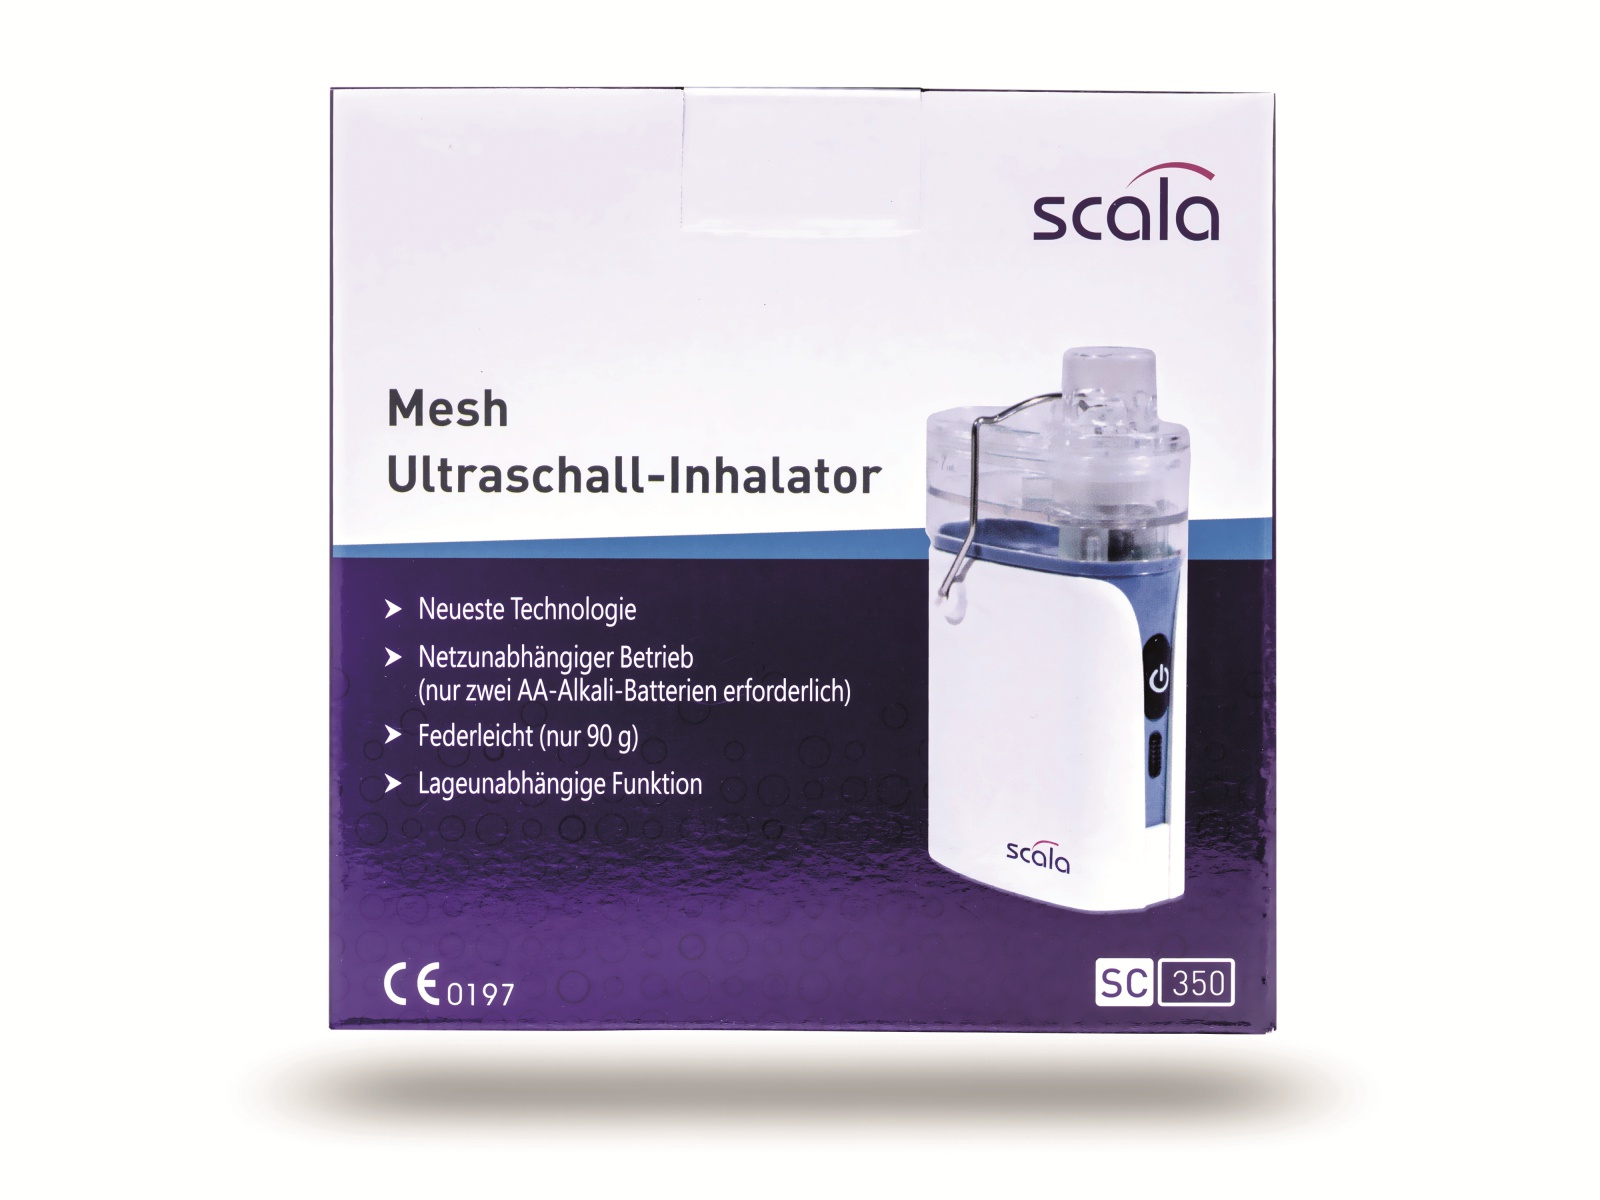 SCALA Mesh Ultraschall-Inhalator SC 350